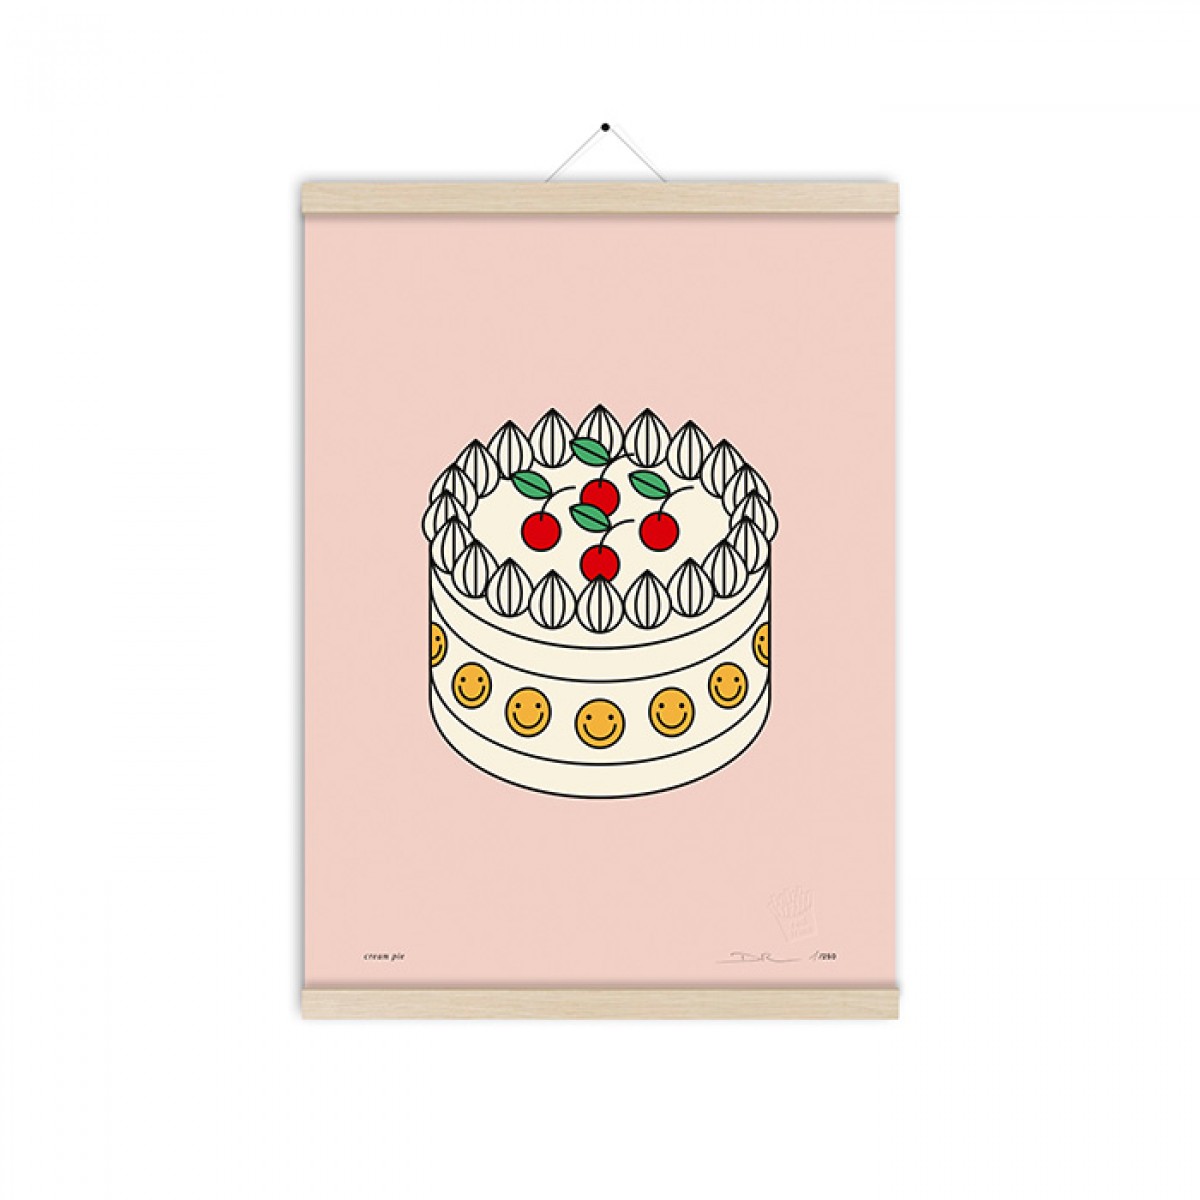 redfries cream pie a3 – Kunstdruck DIN A3